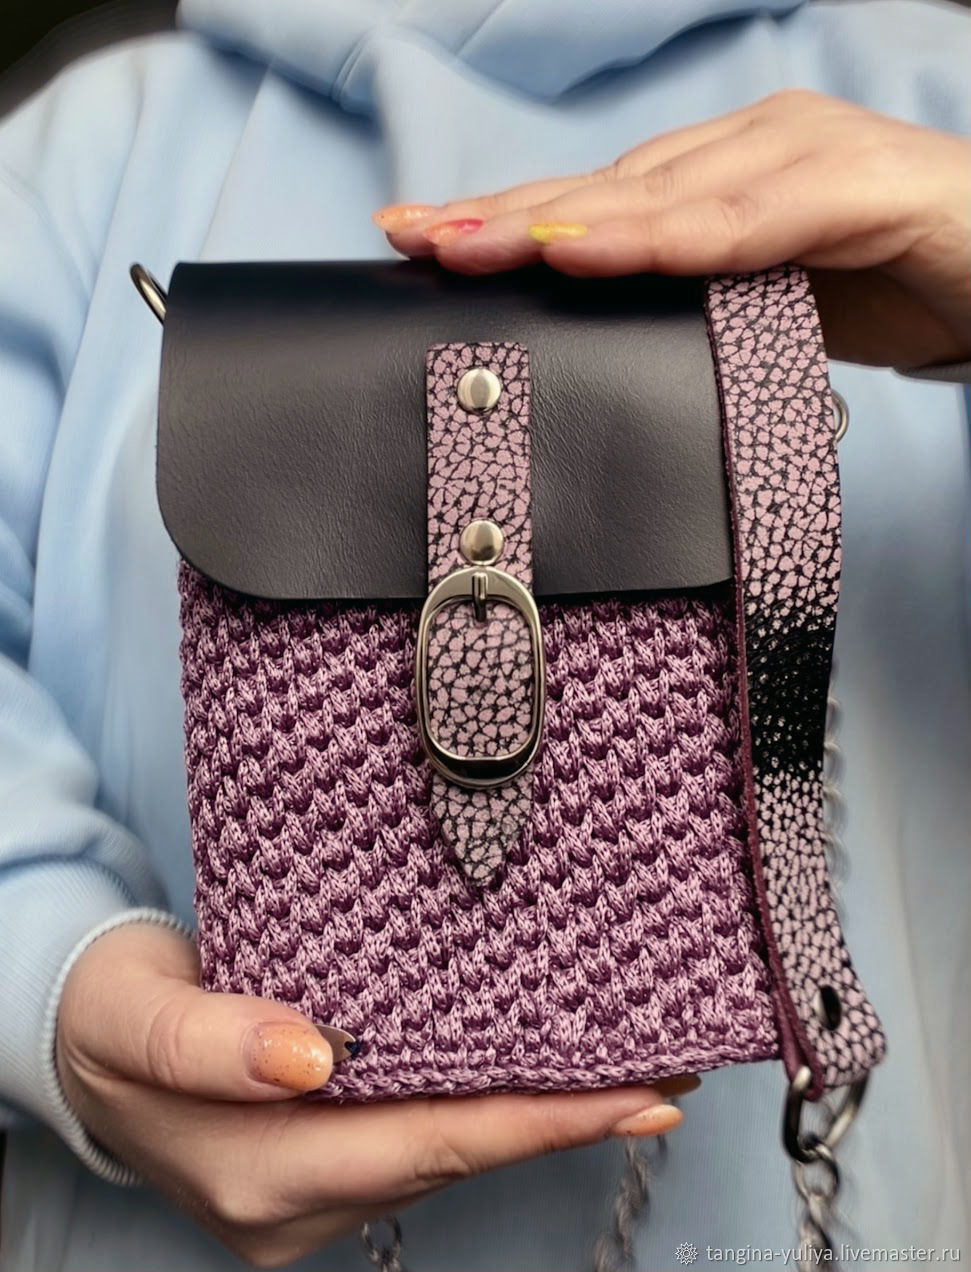 Женская мини сумка вязаная крючком из полиэфирного шнура Сирень, Сумка через плечо, Фрязино,  Фото №1